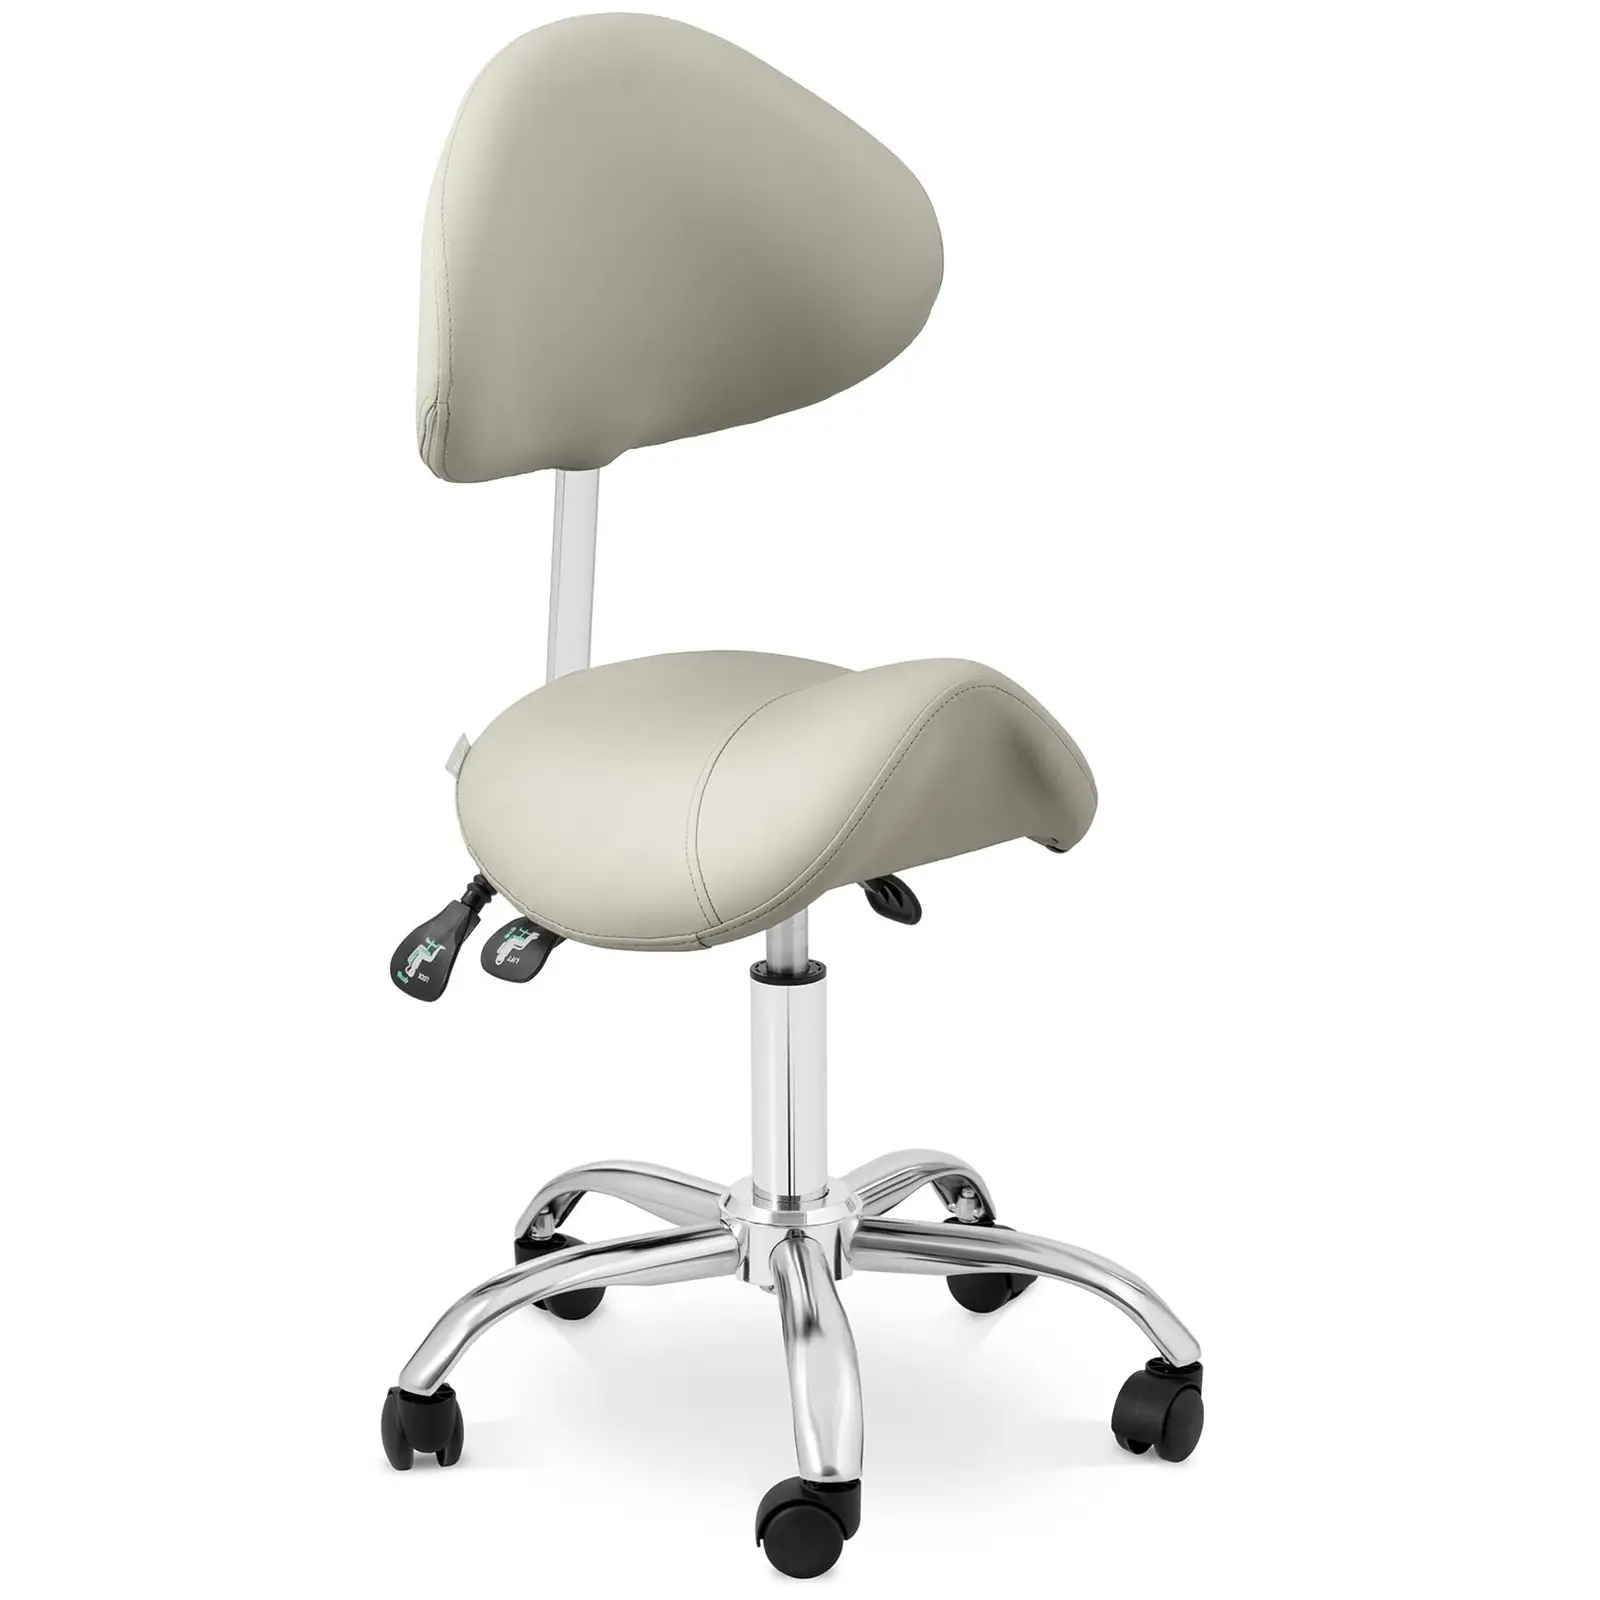 Стол тип седло - регулиране на височината на облегалката и седалката - 55 - 69 см - 150 кг - сив, сребрист